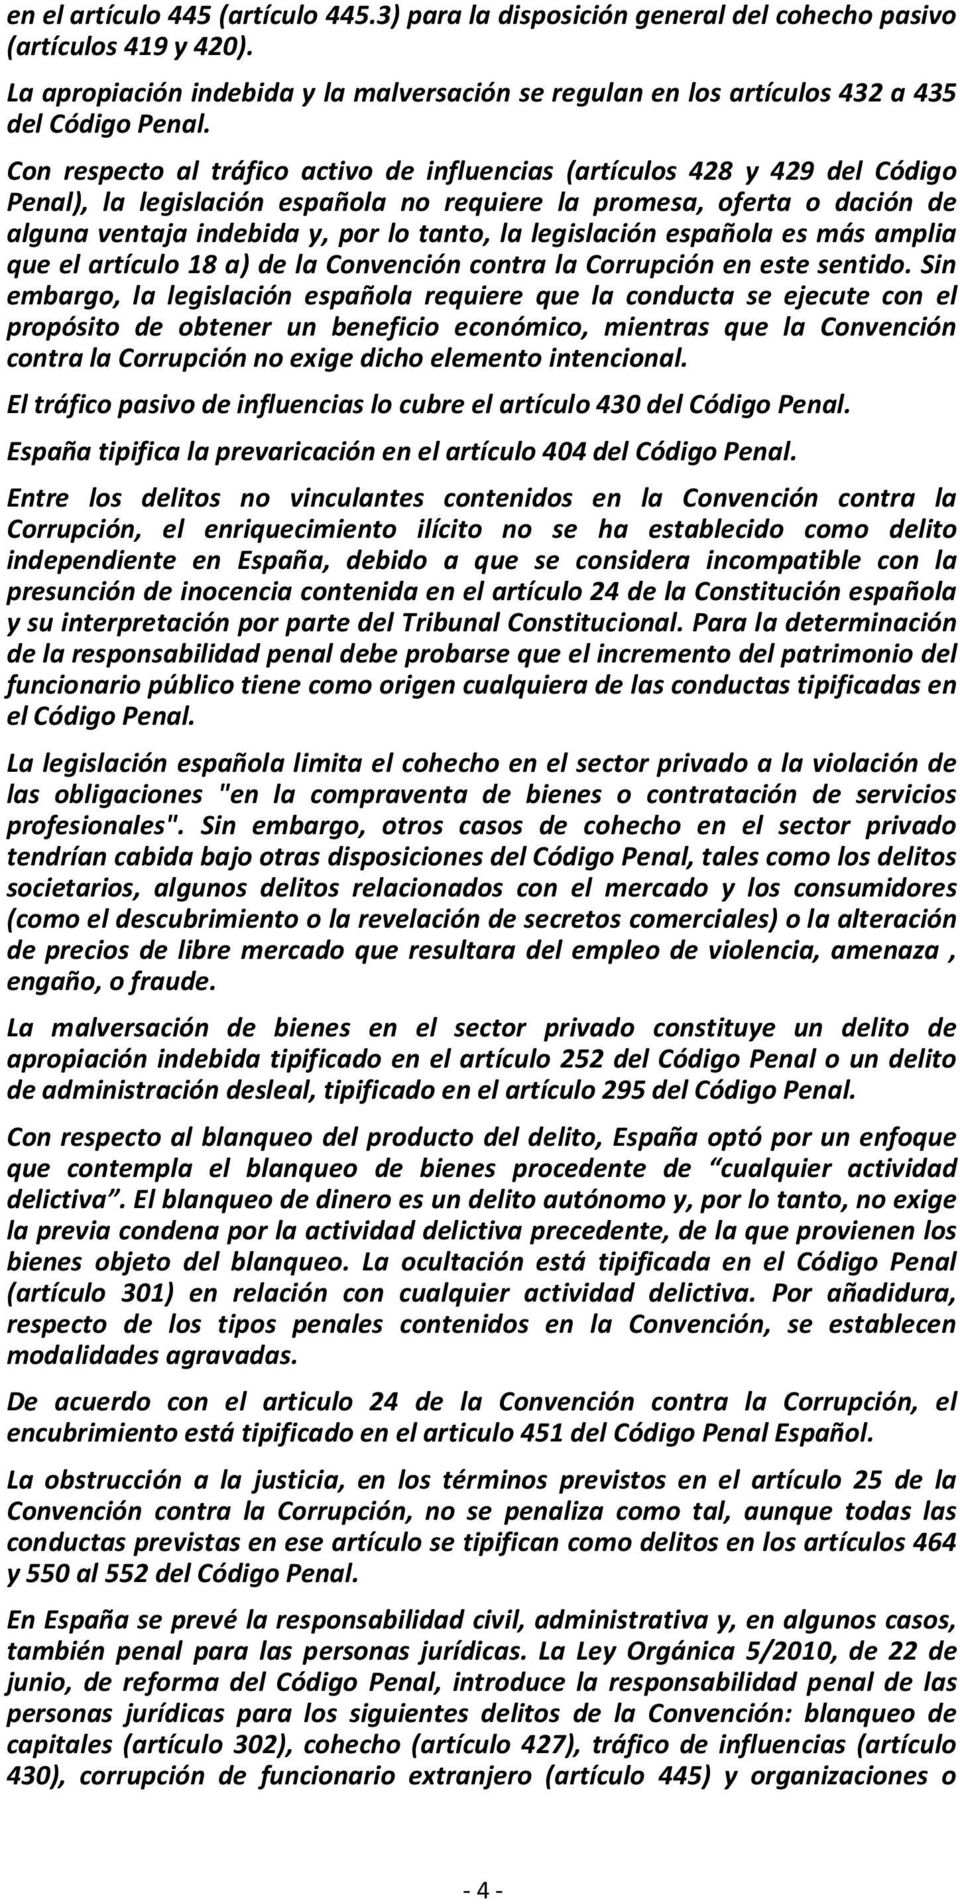 Con respecto al tráfico activo de influencias (artículos 428 y 429 del Código Penal), la legislación española no requiere la promesa, oferta o dación de alguna ventaja indebida y, por lo tanto, la